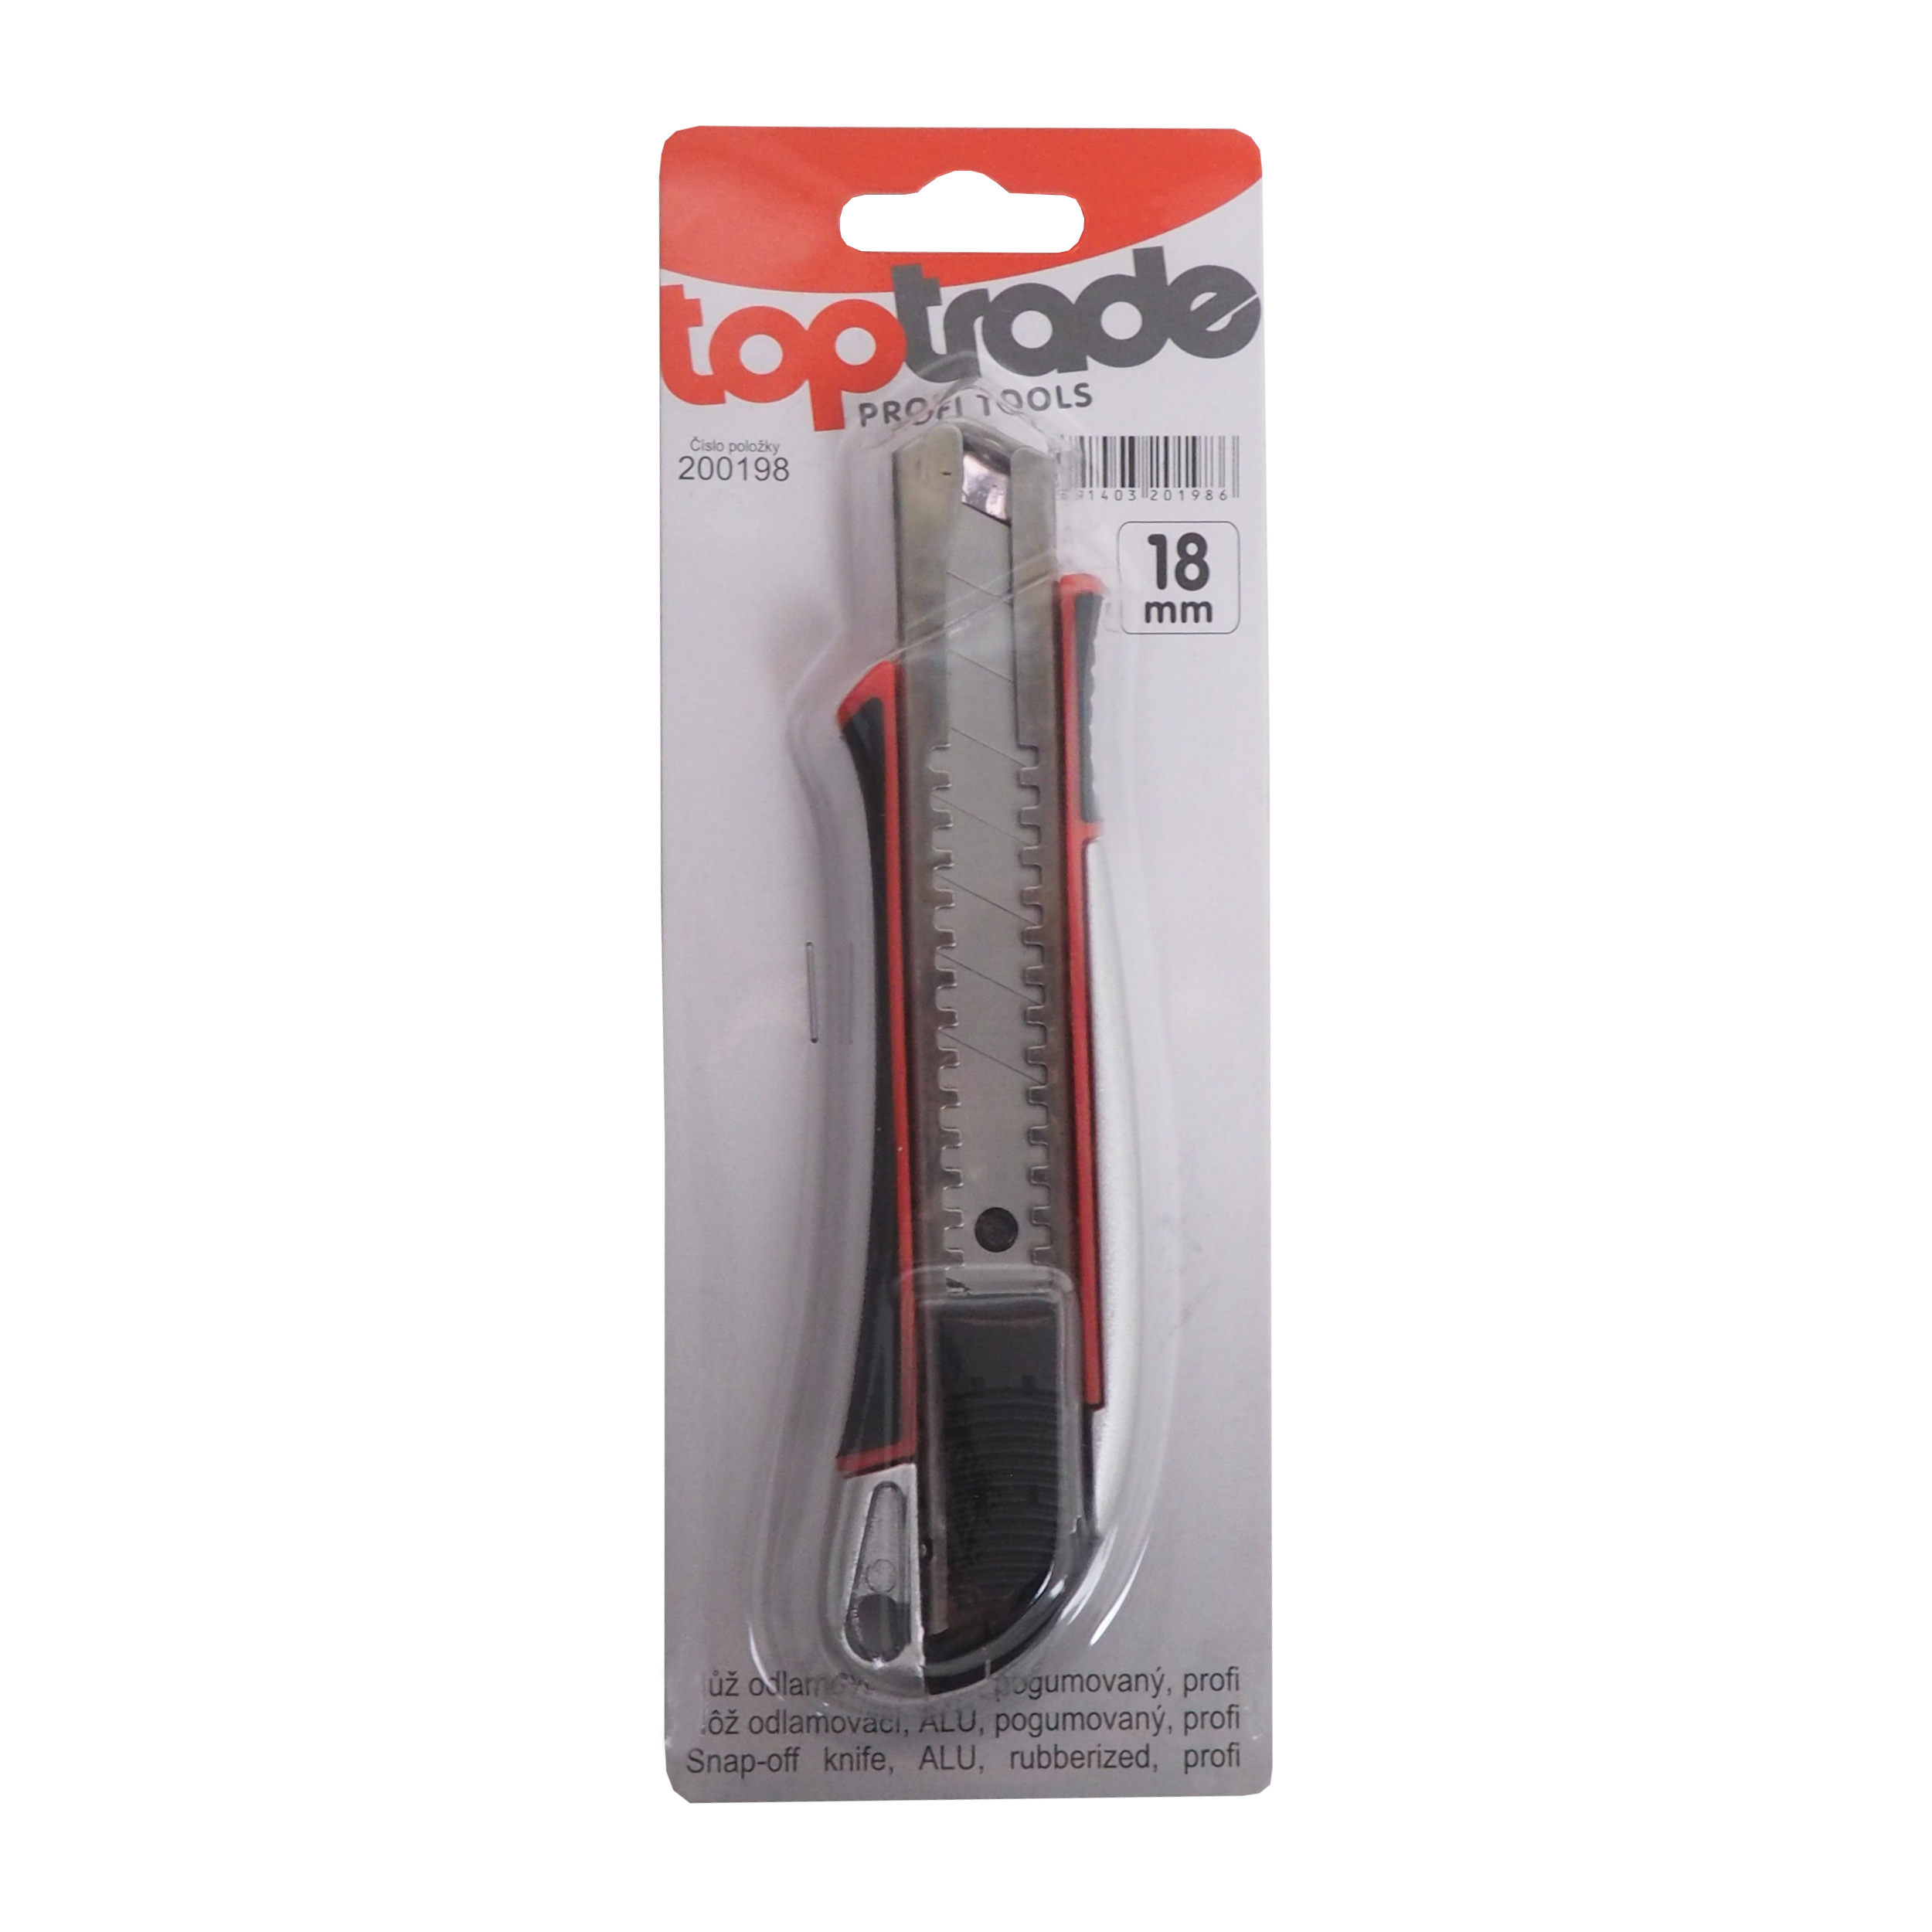 TOPTRADE nůž odlamovací, ALU, pogumovaný, 18 mm, profi 0.11 Kg TOP Sklad4 200198 612